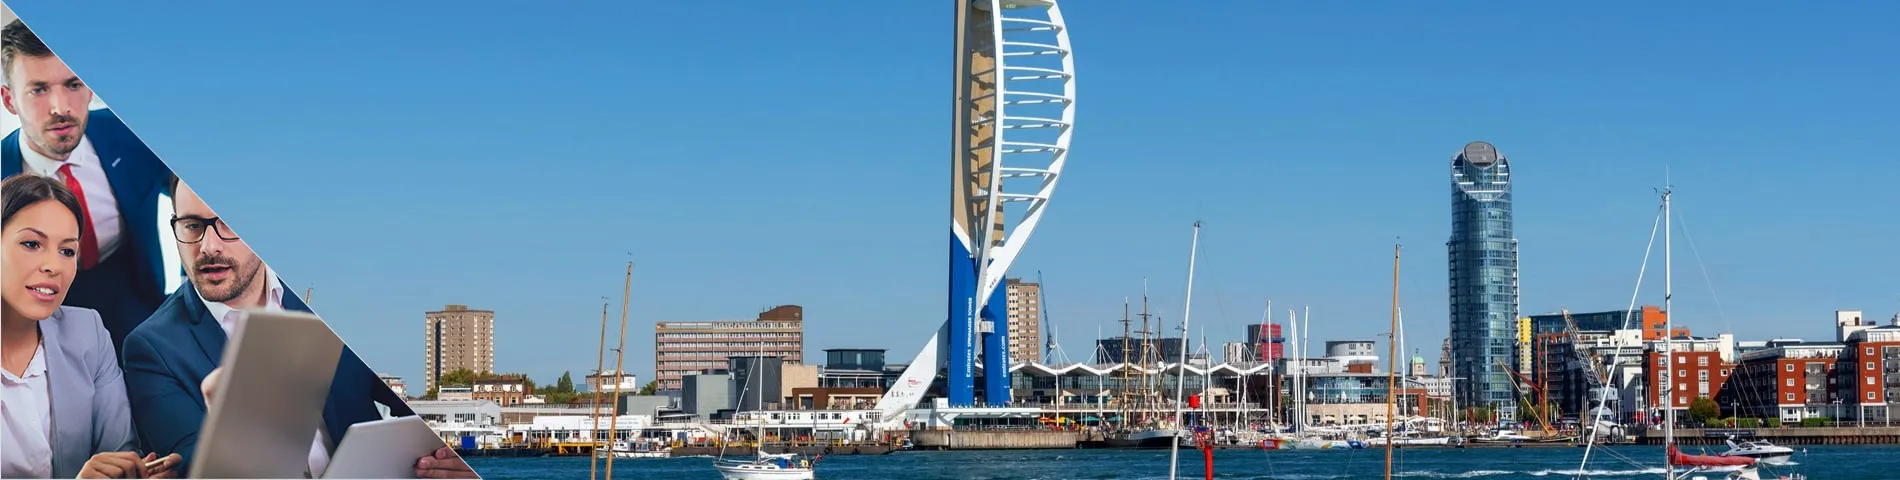 Portsmouth - Štandard a biznis - kombinovaná skupina